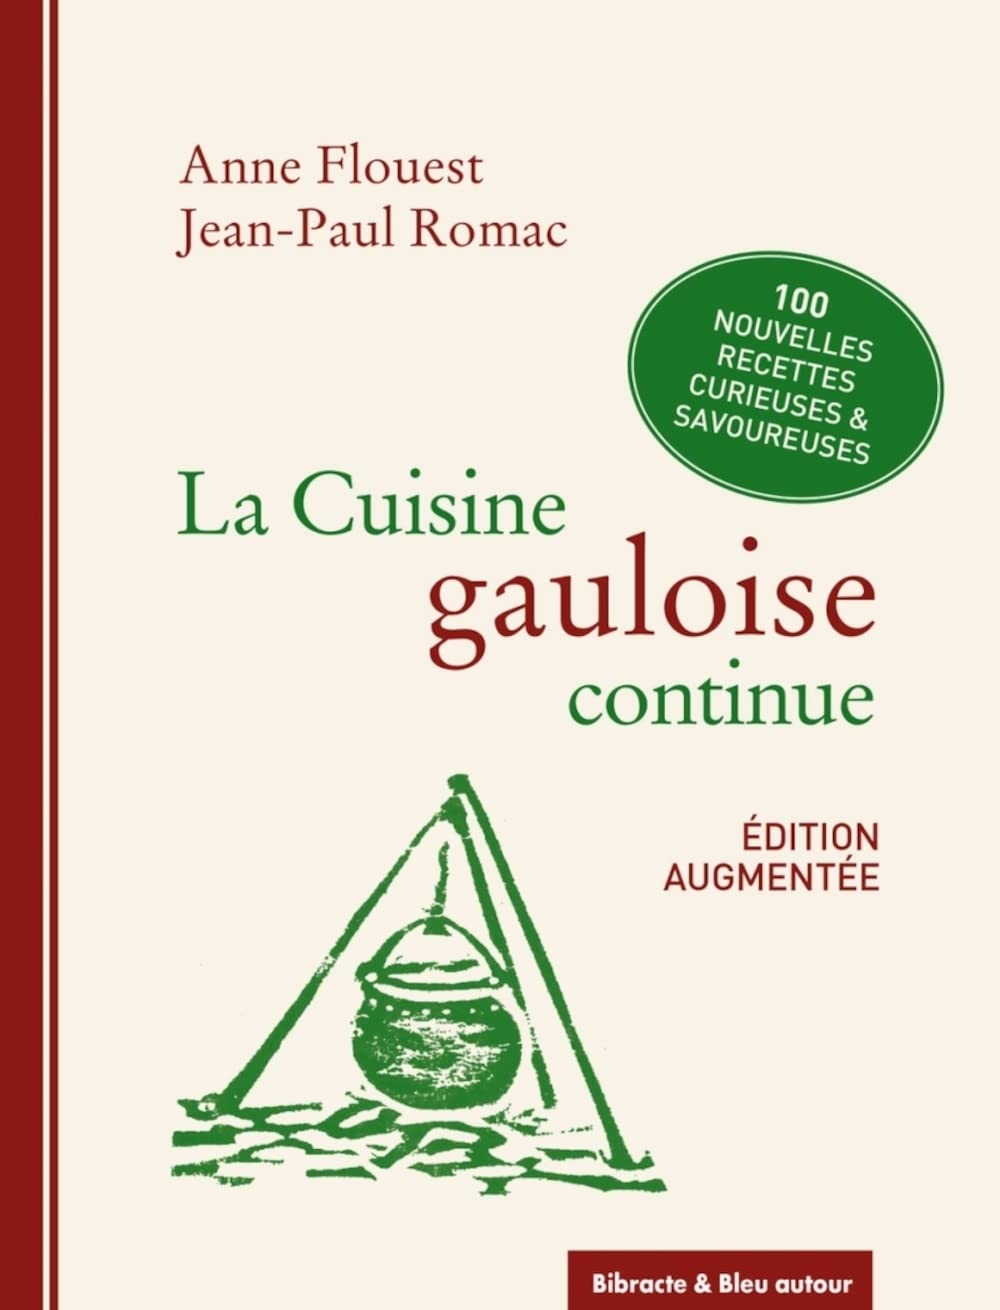 La cuisine gauloise continue - Nouvelle édition    - Bleu autour Ed. - Livre de cuisine - 